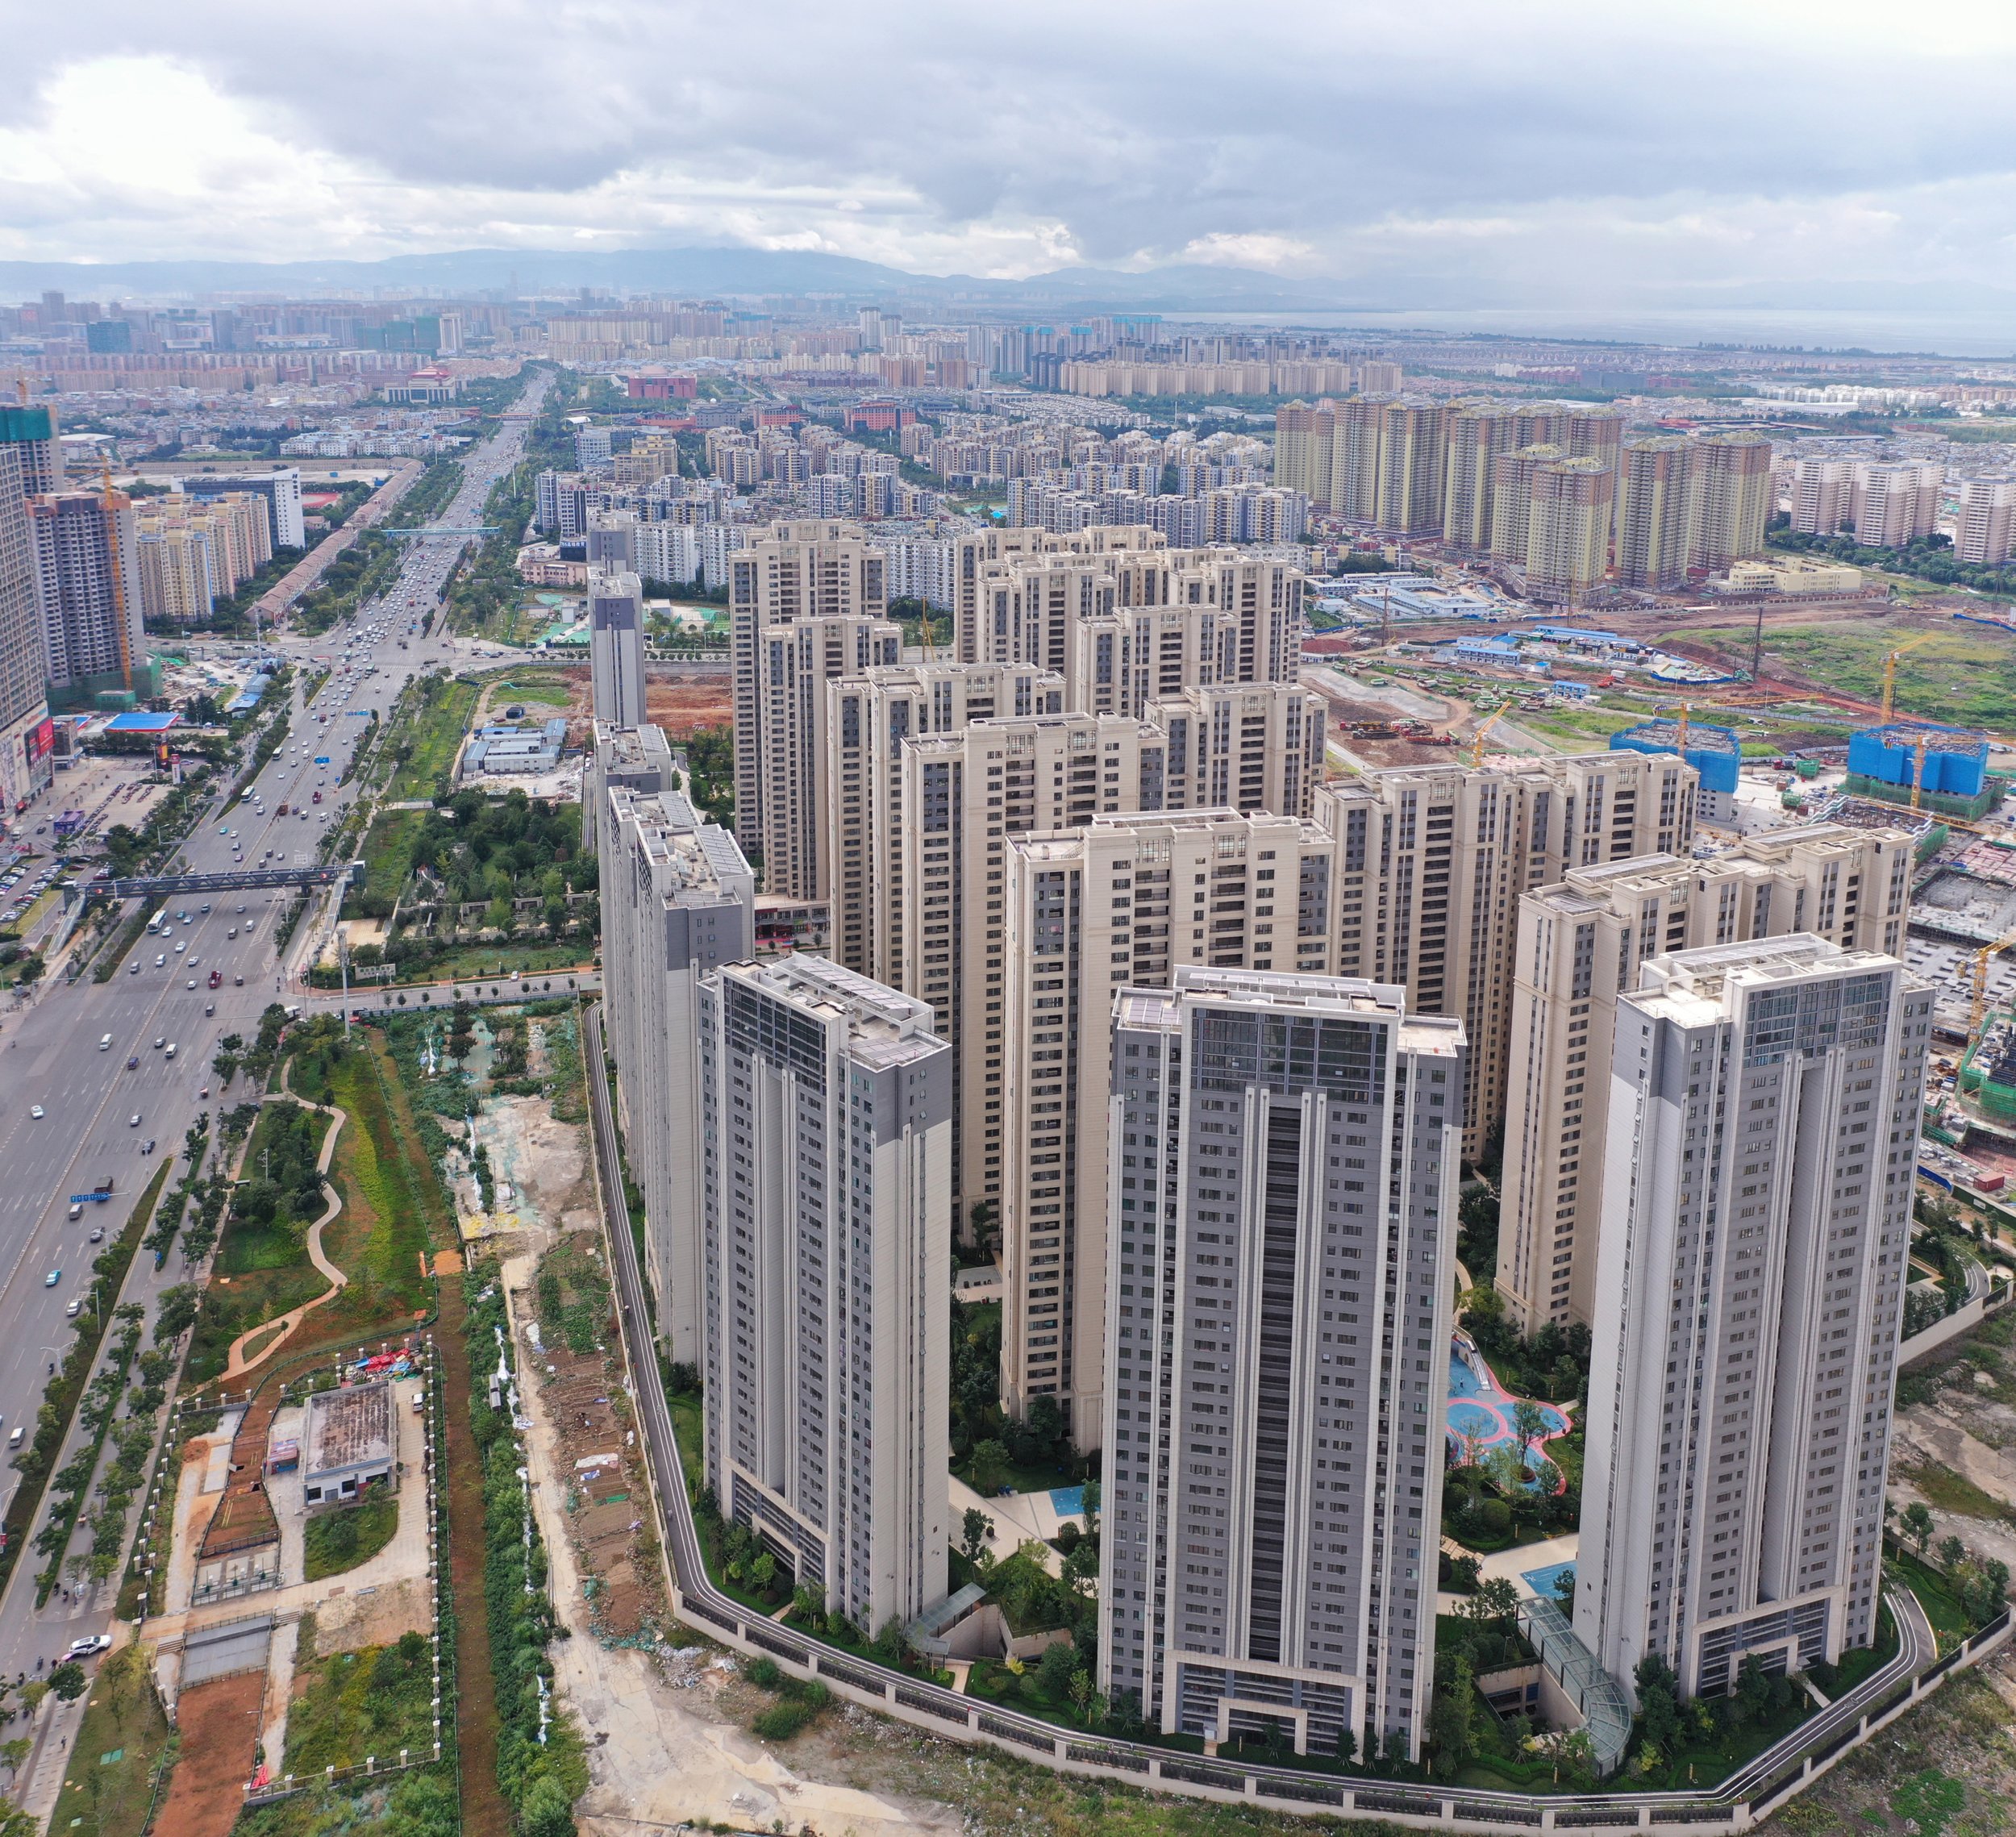 Aerial-view-of-residential-properties-1037716.jpg